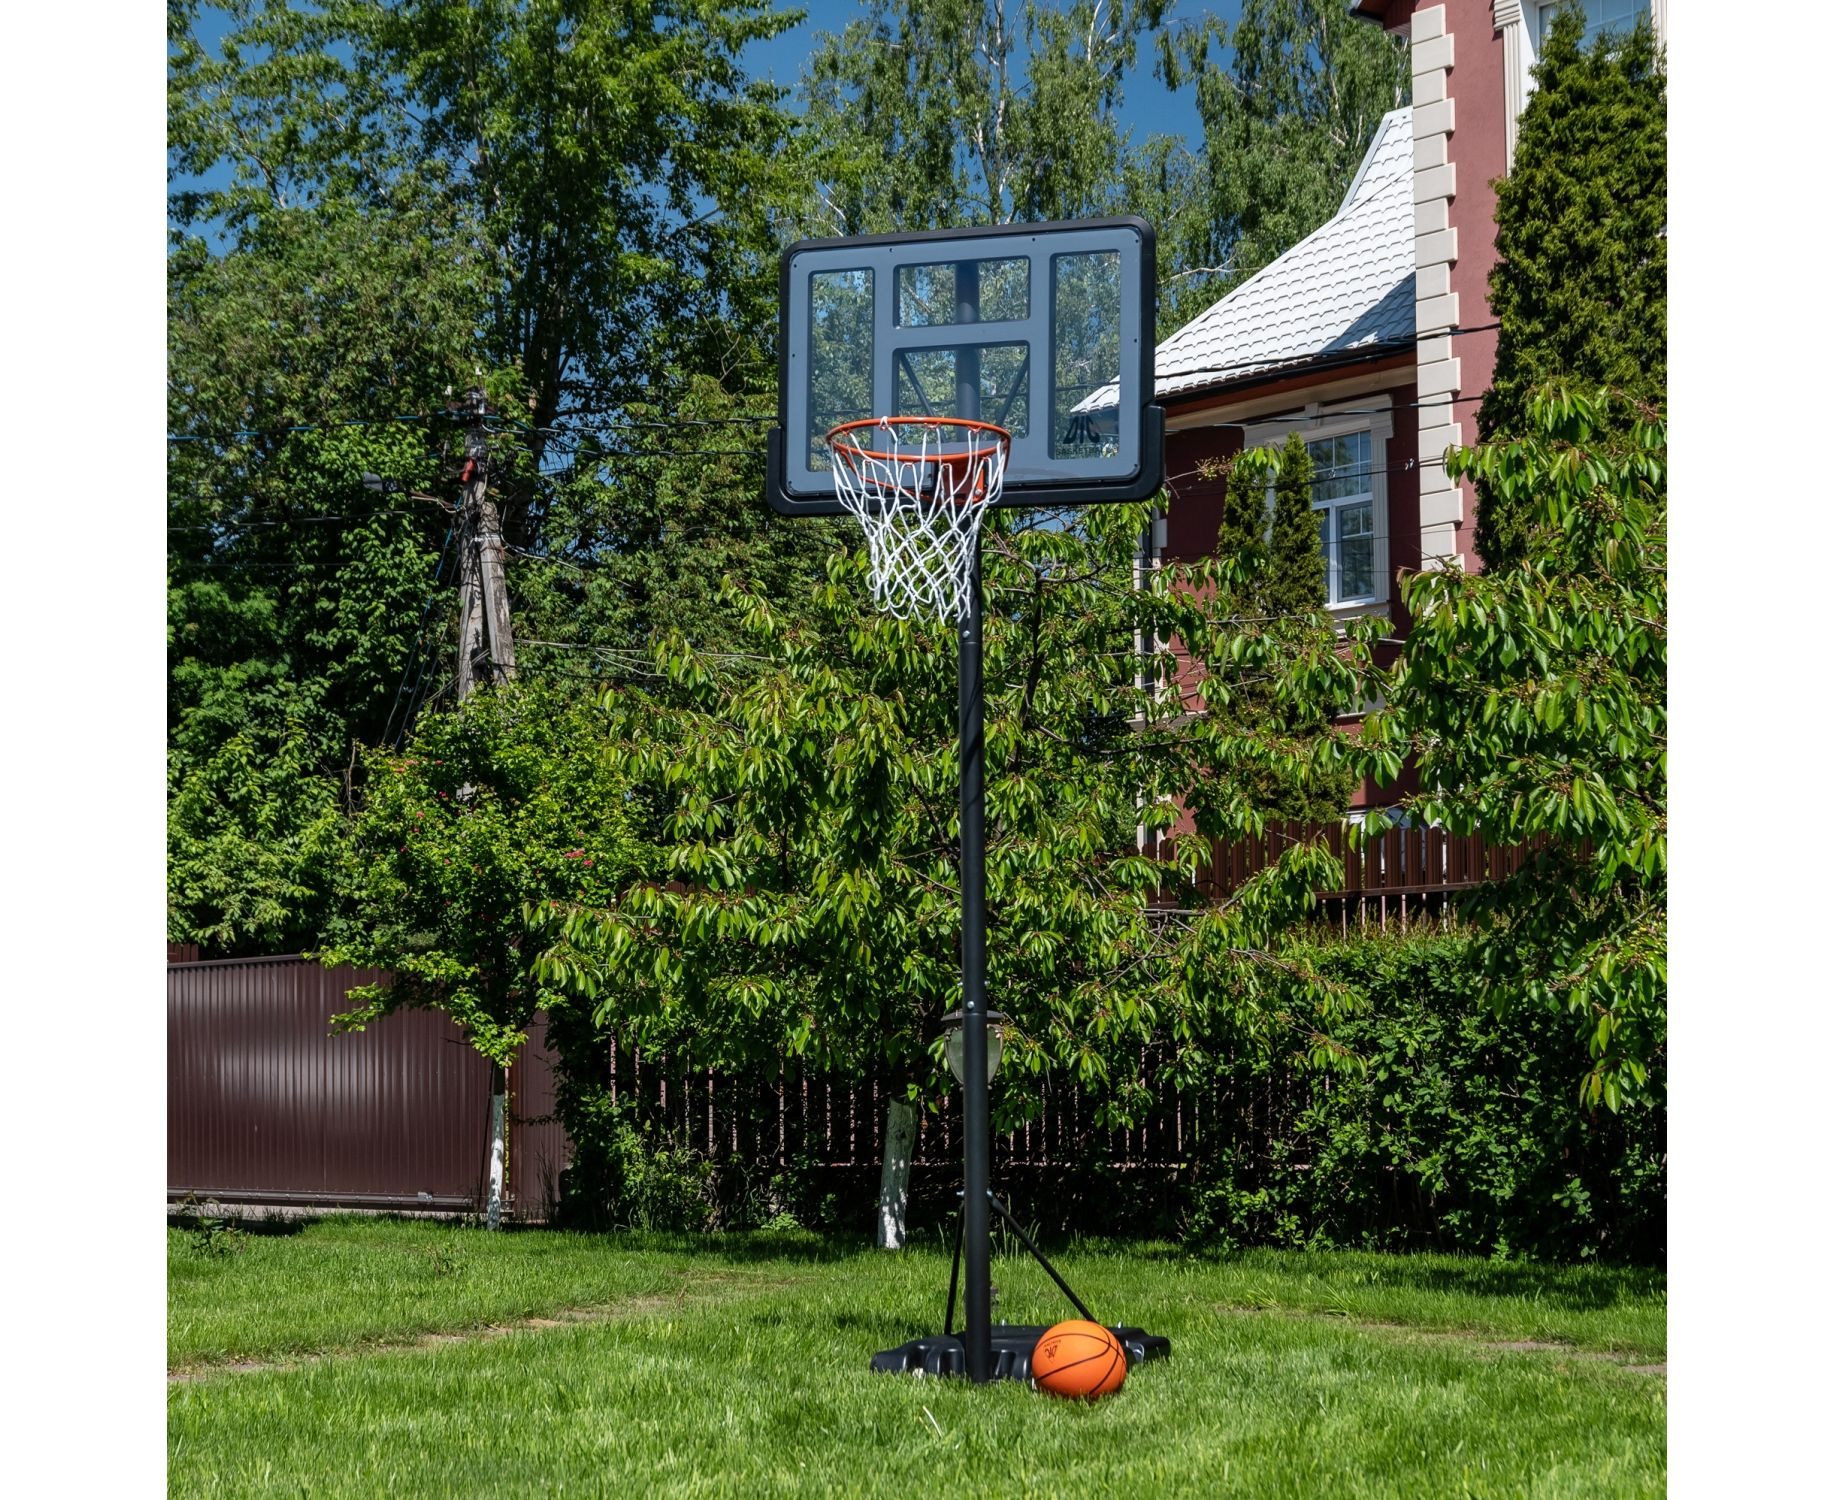 Мобильная баскетбольная стойка DFC STAND44A003